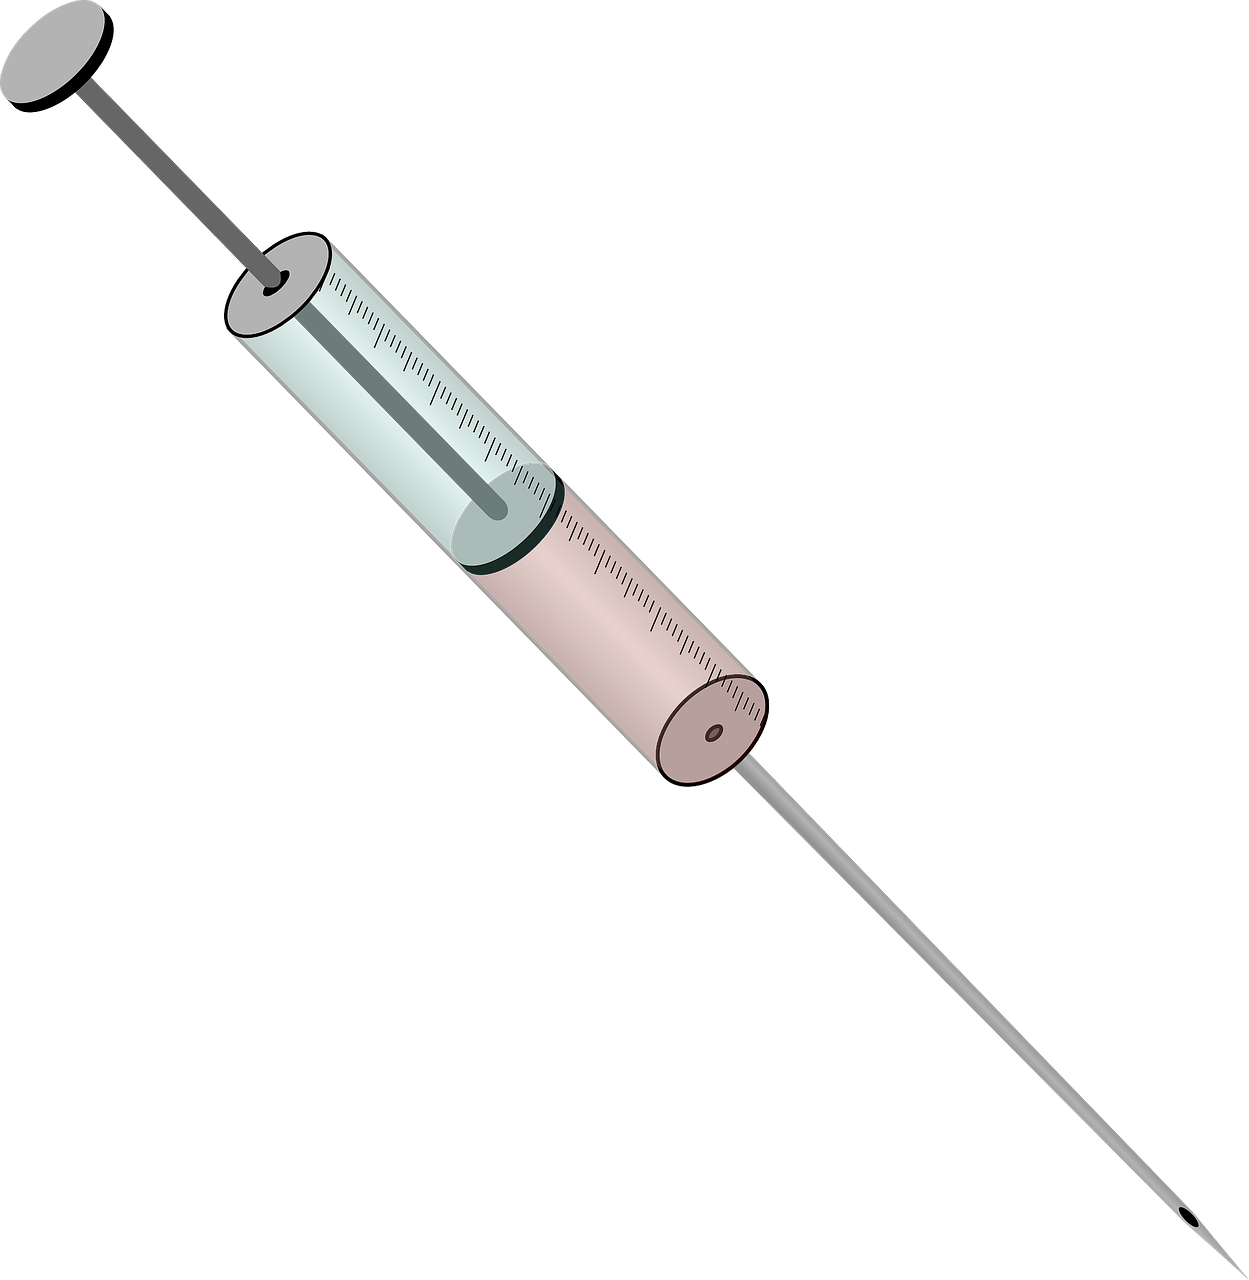 injection syringe needle free photo